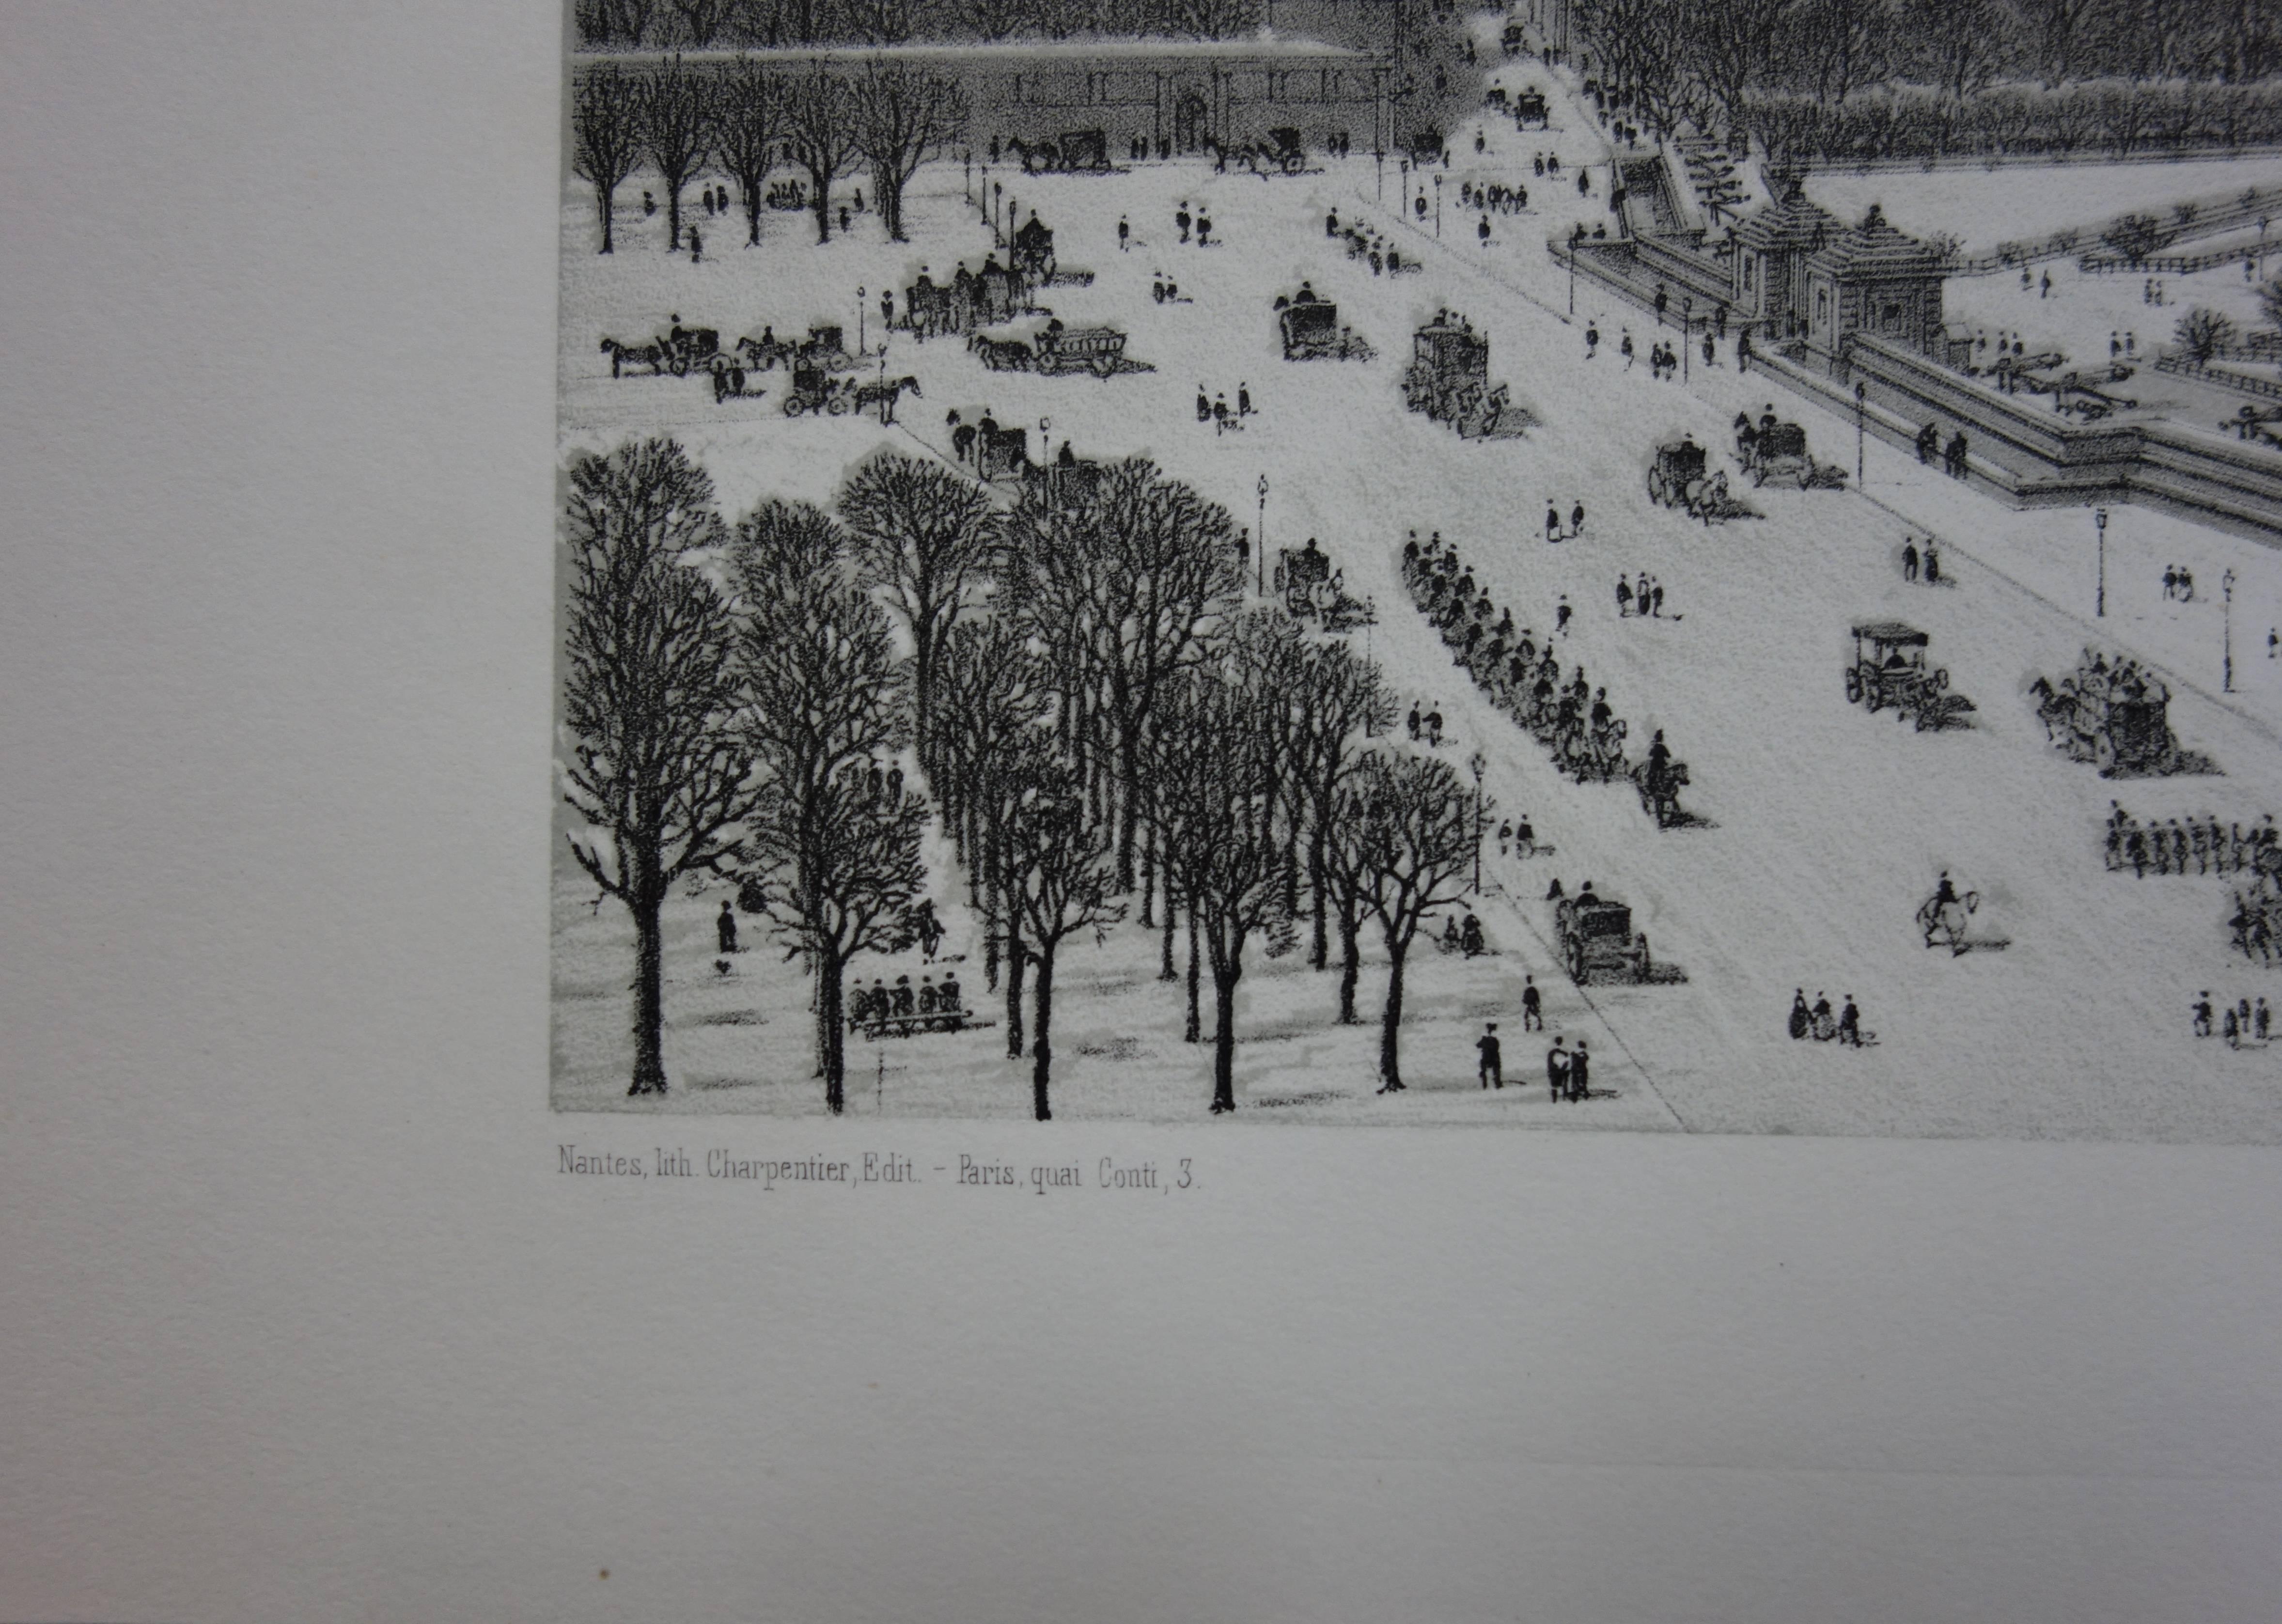 Paris : Les Invalides under the Snow - Original stone lithograph  - Gray Landscape Print by  Philippe Benoist